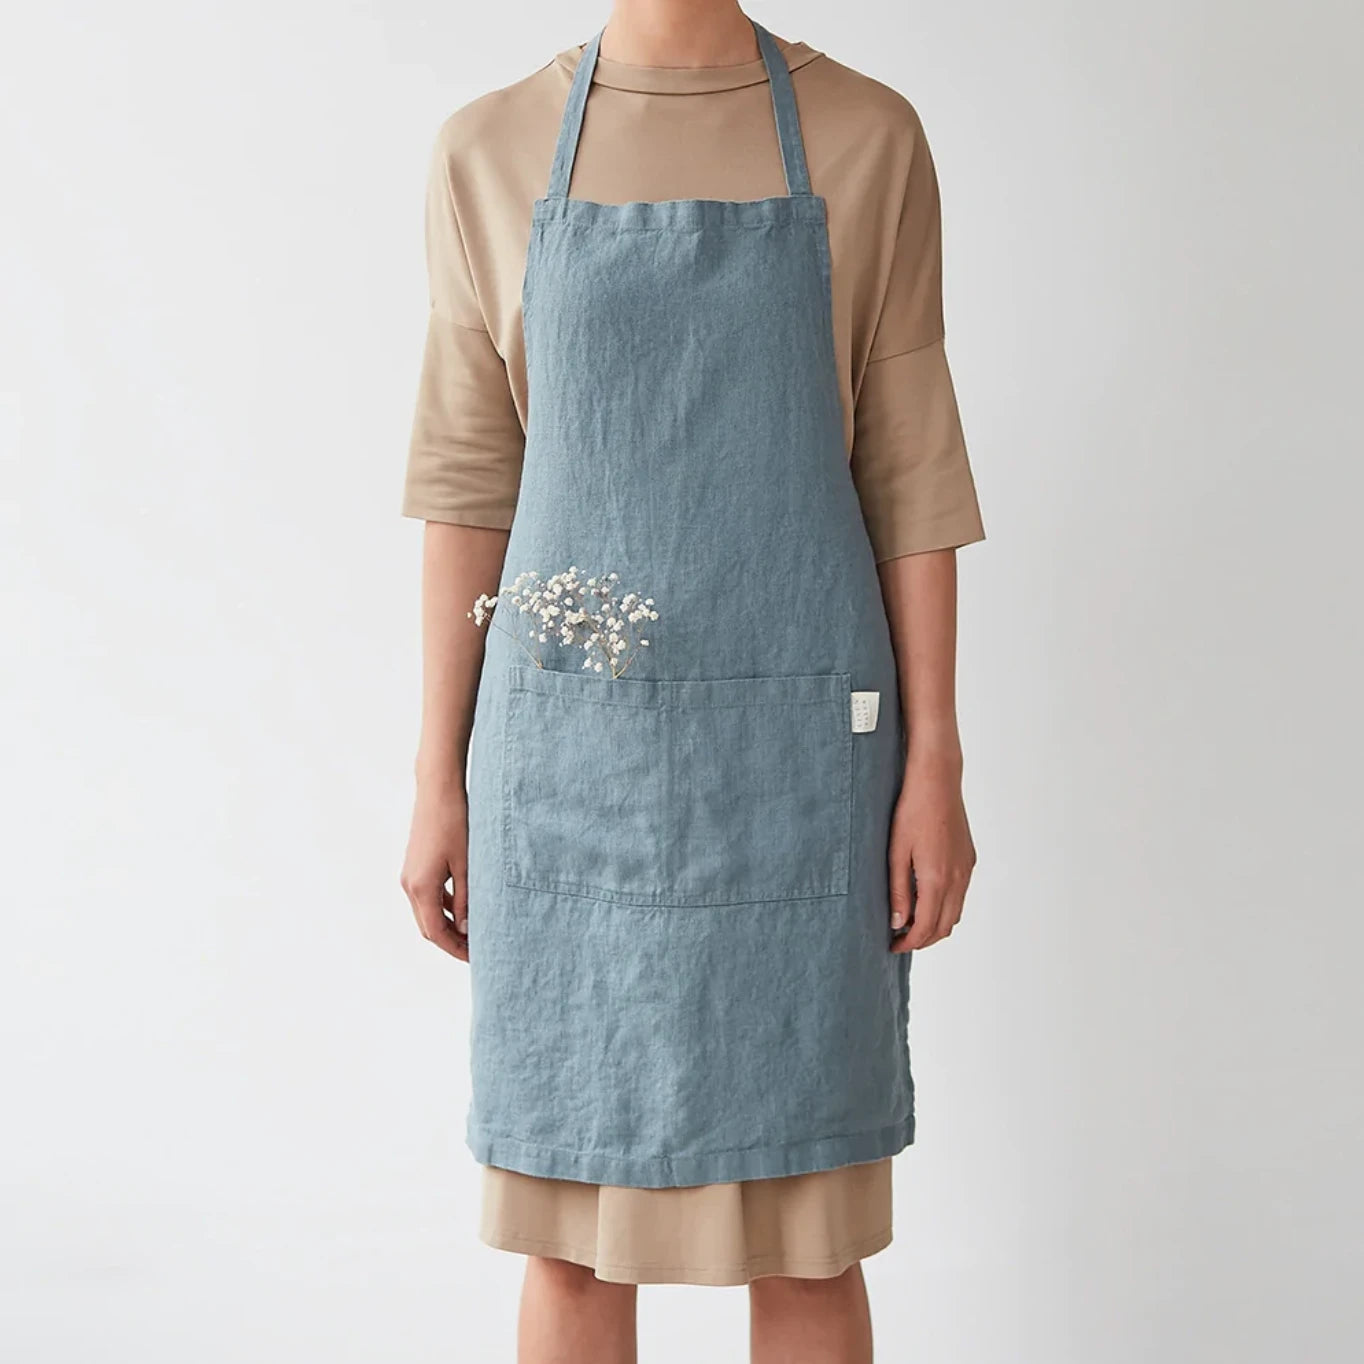 Ett blått köksförkläde i linne som har fickor framtill och har knutits i ryggen. 